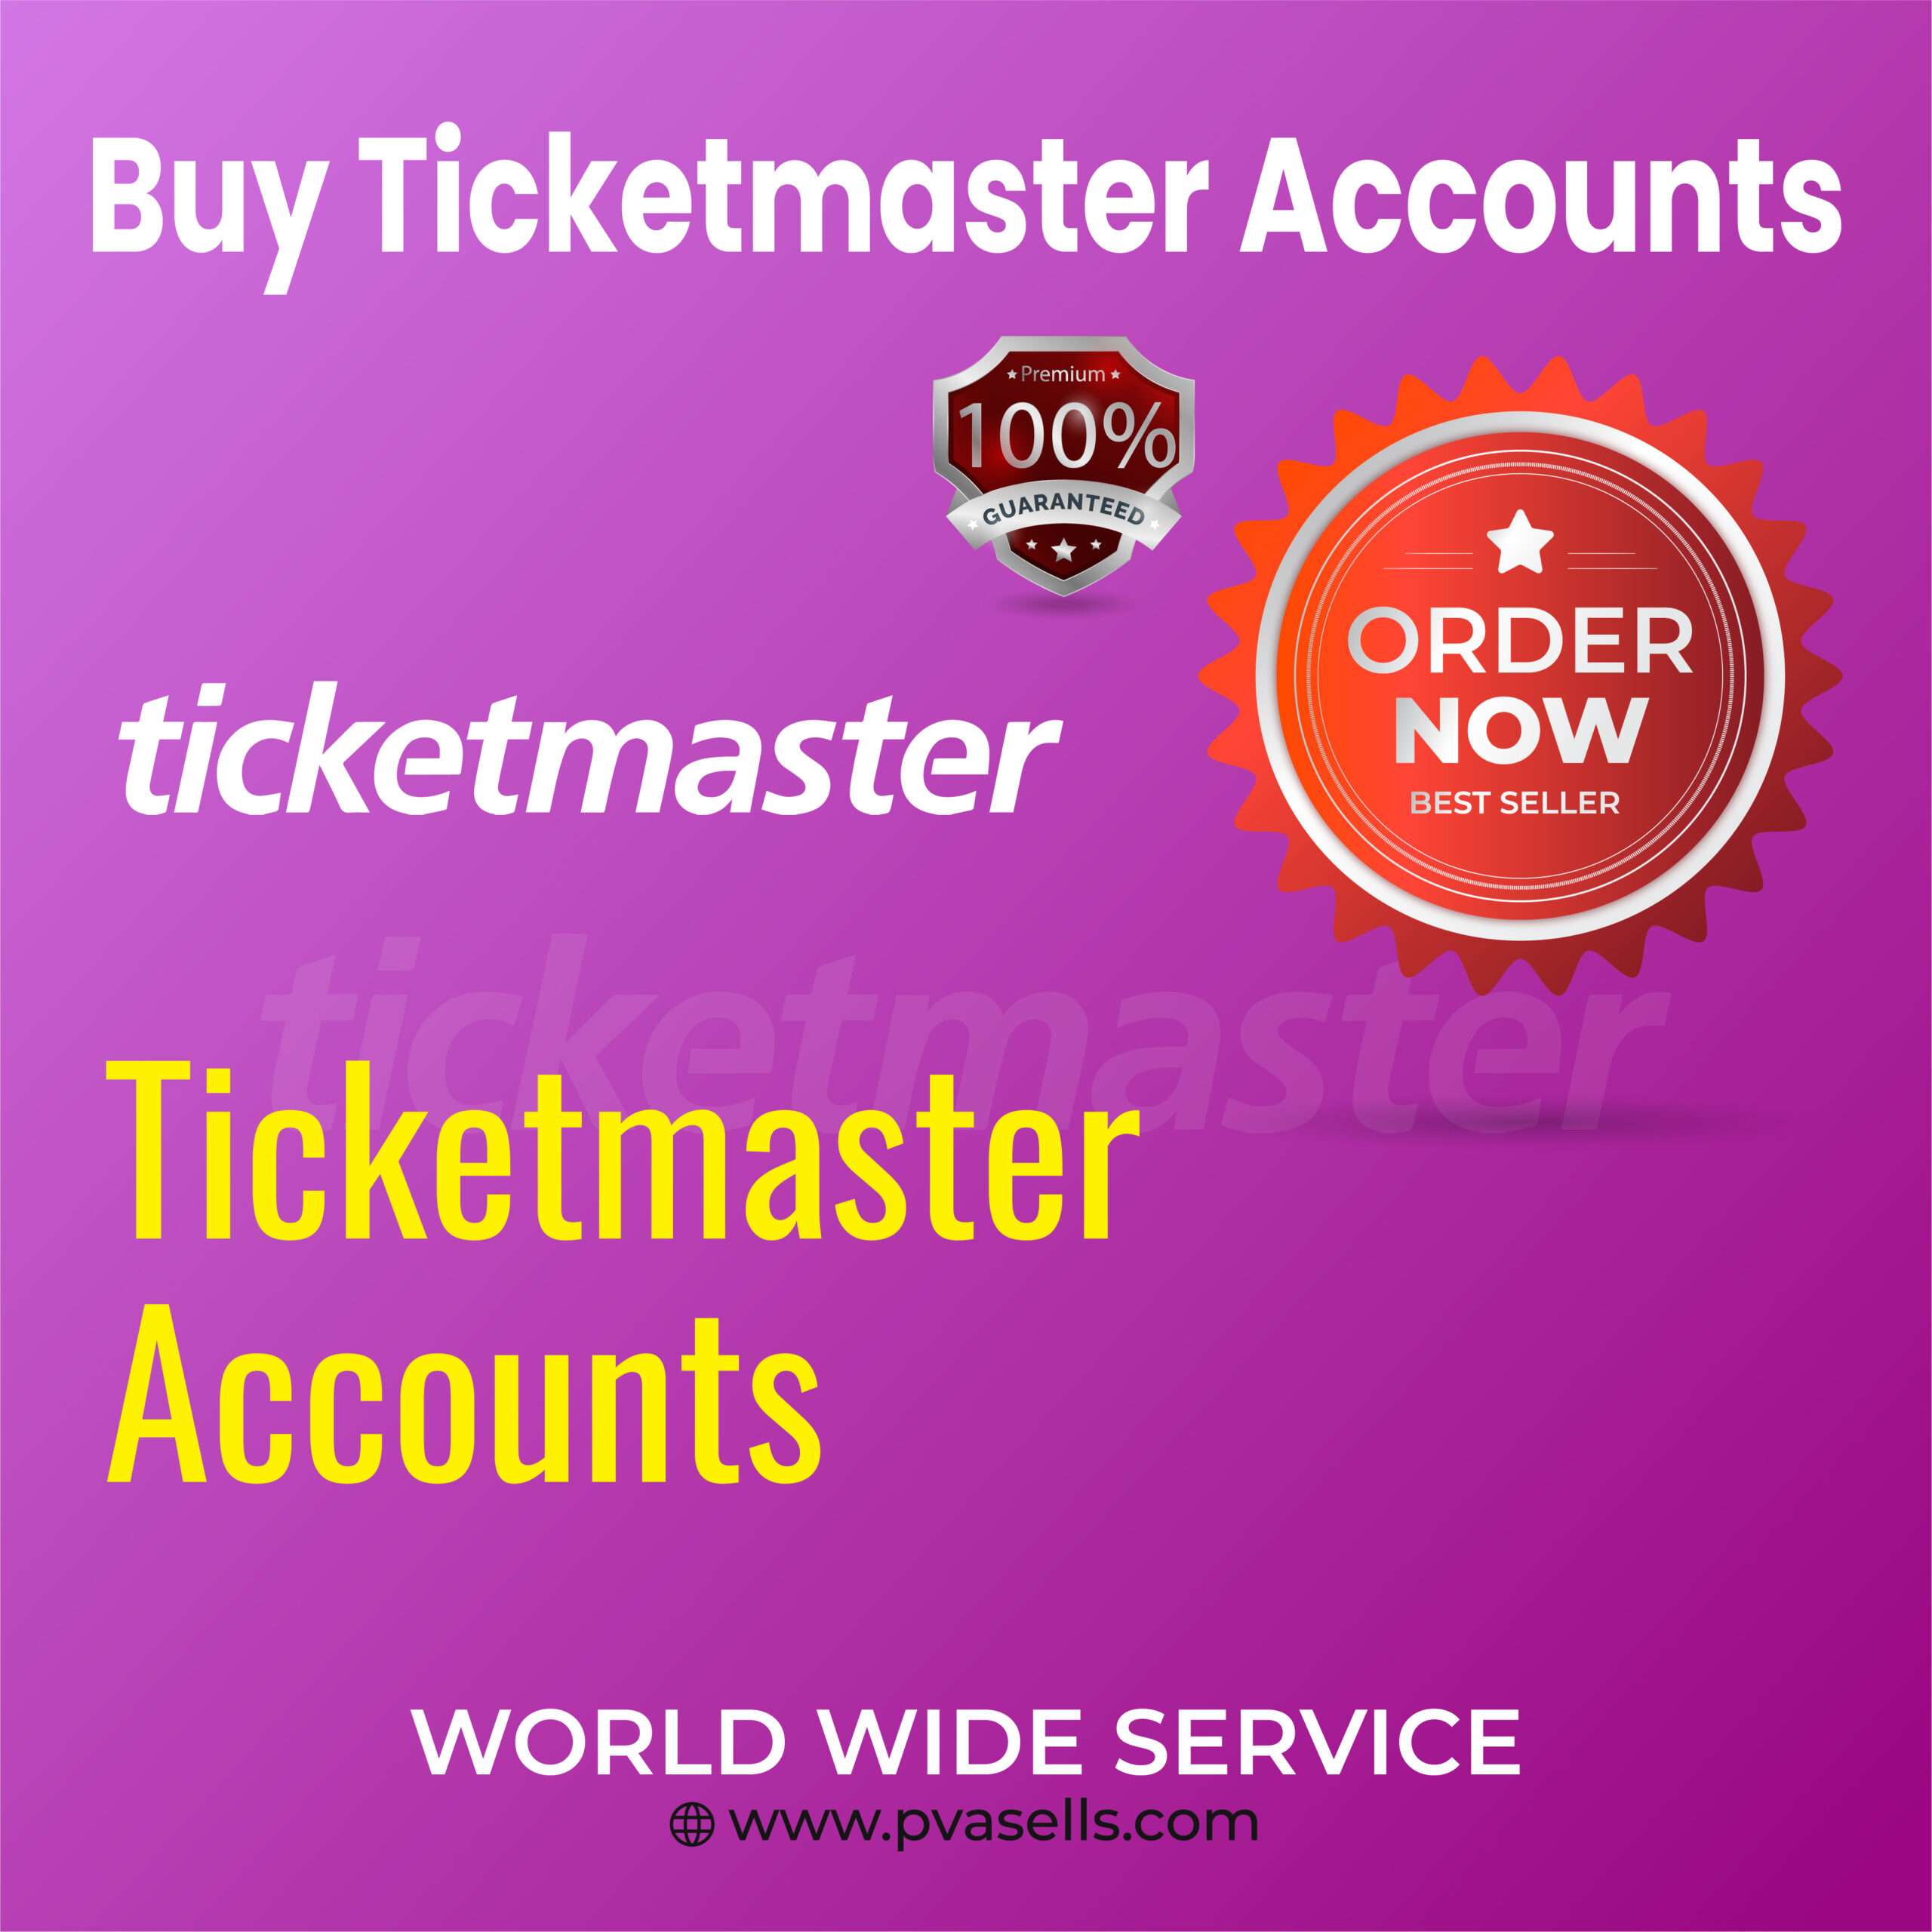 Buy Ticketmaster Accounts - 100% KYC Verified Accounts...